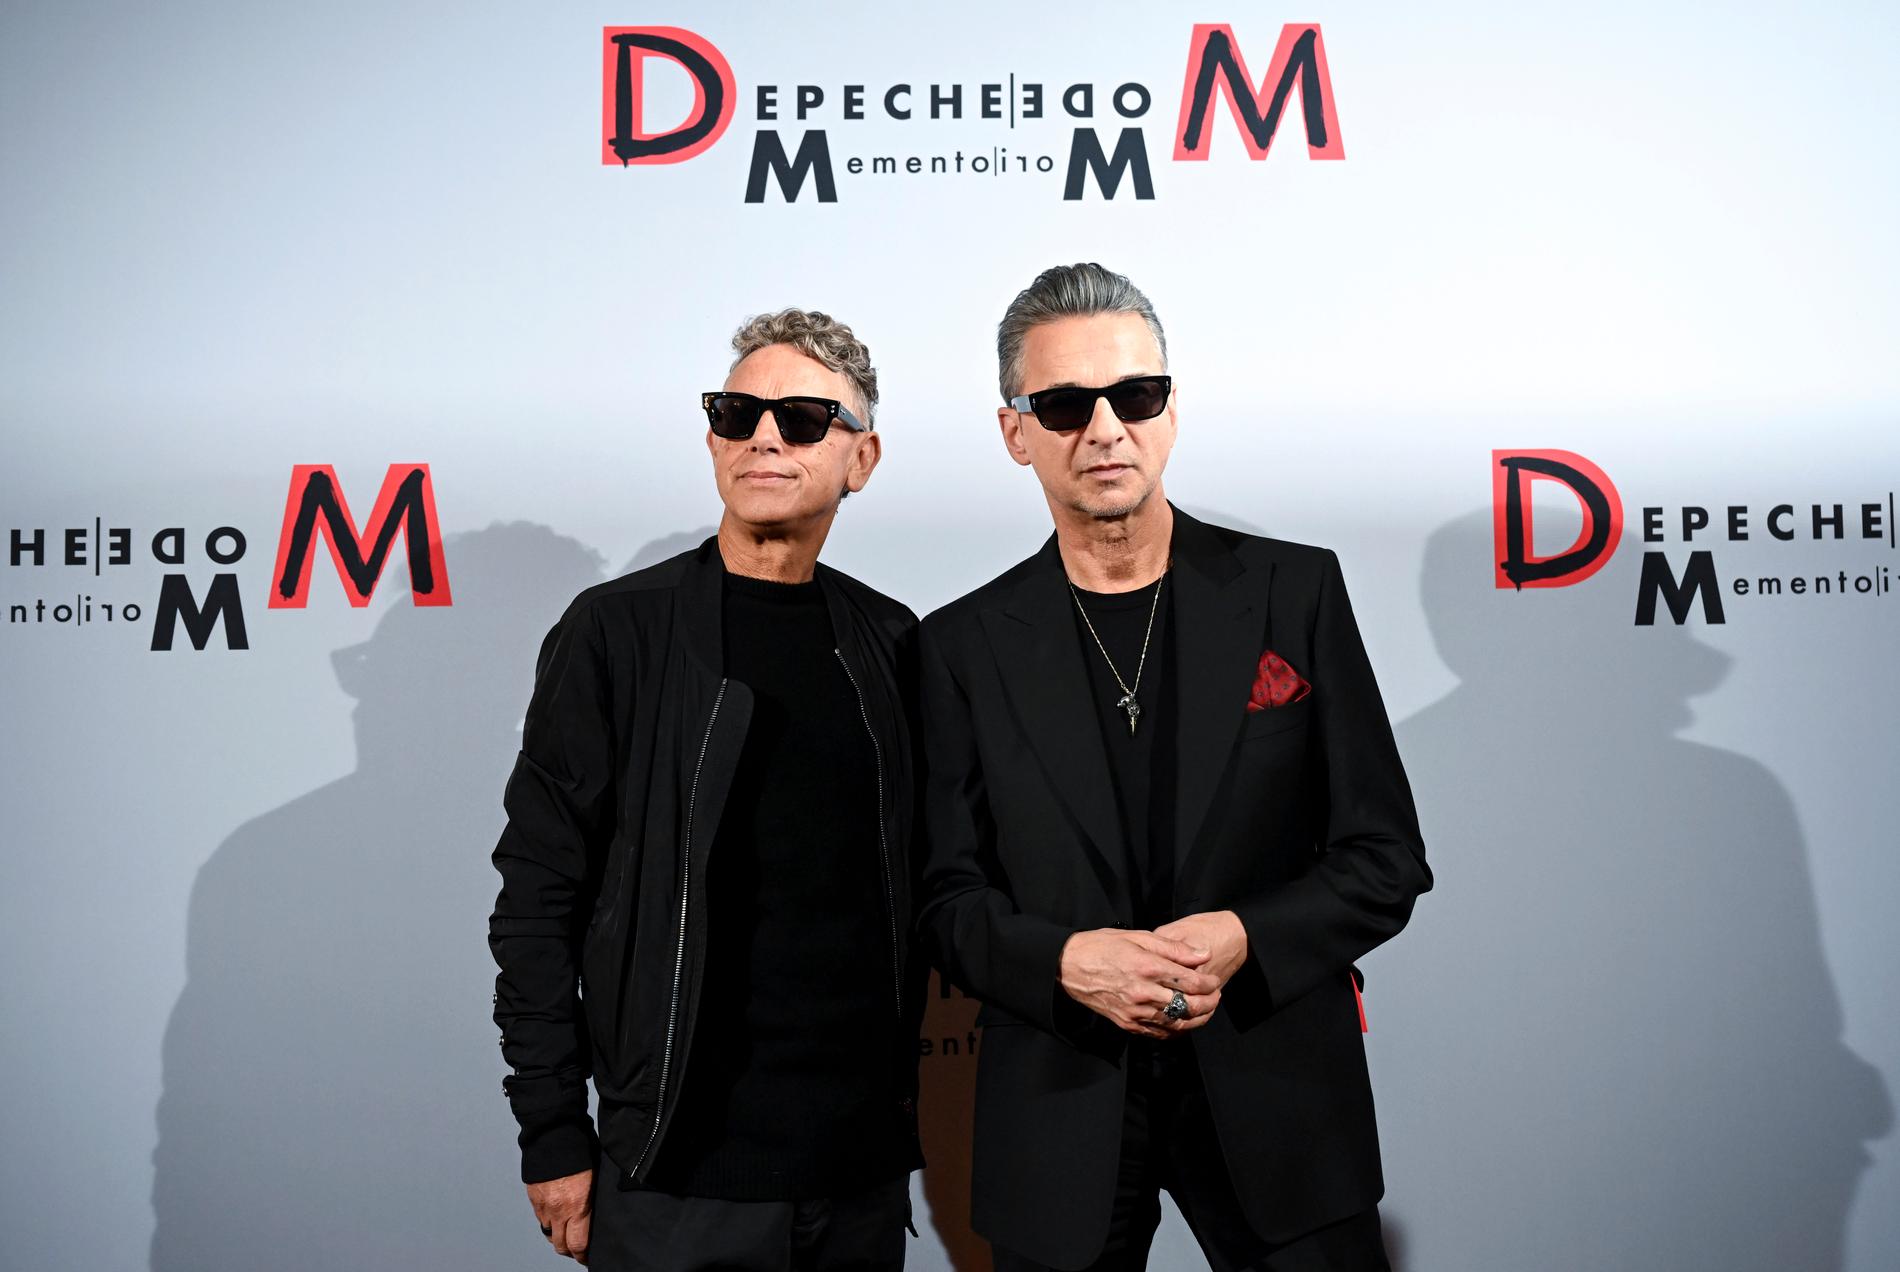 Efter Andy Fletchers bortgång i våras består Depeche Mode nu endast av Martin Gore och Dave Gahan. I mars släpper duon nya albumet ”Memento mori” och i maj spelar de på Friends Arena i Stockholm.